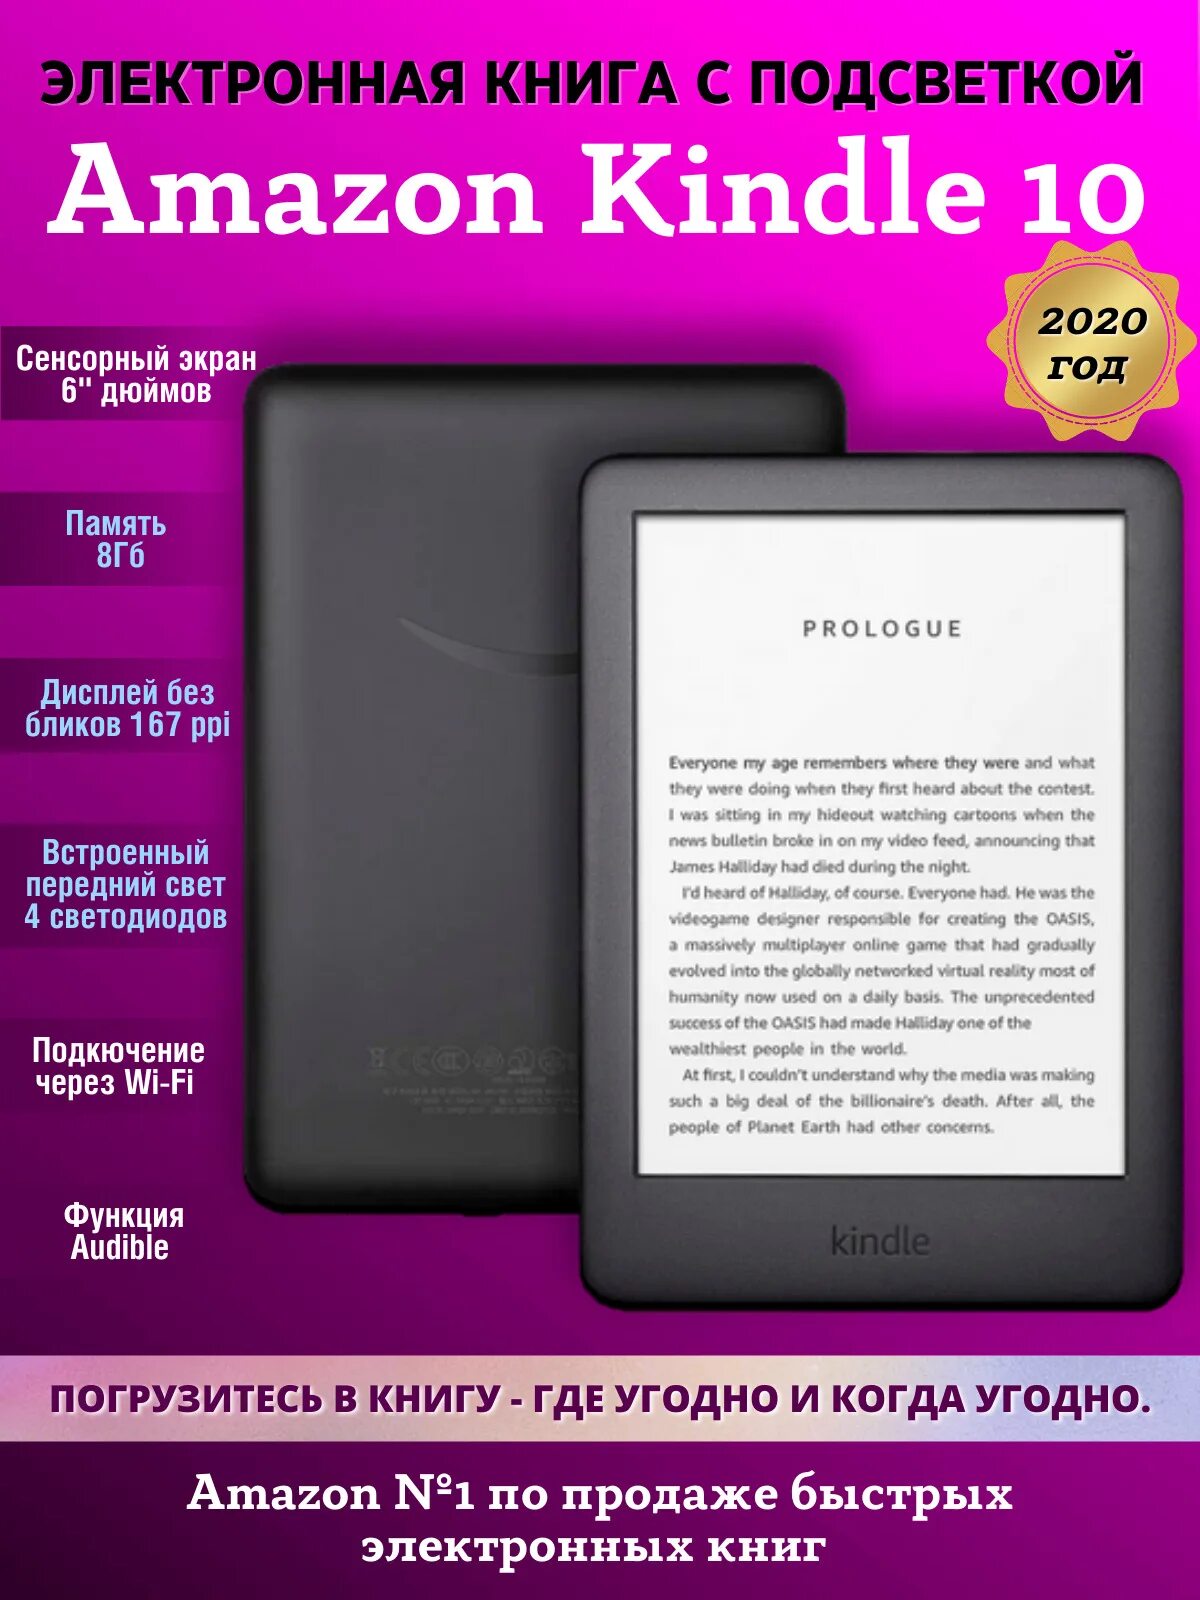 Электронная книга Amazon Kindle. Электронная книга Амазон Киндл 10. " Электронная книга Amazon Kindle 10 2019-2020 4.7.